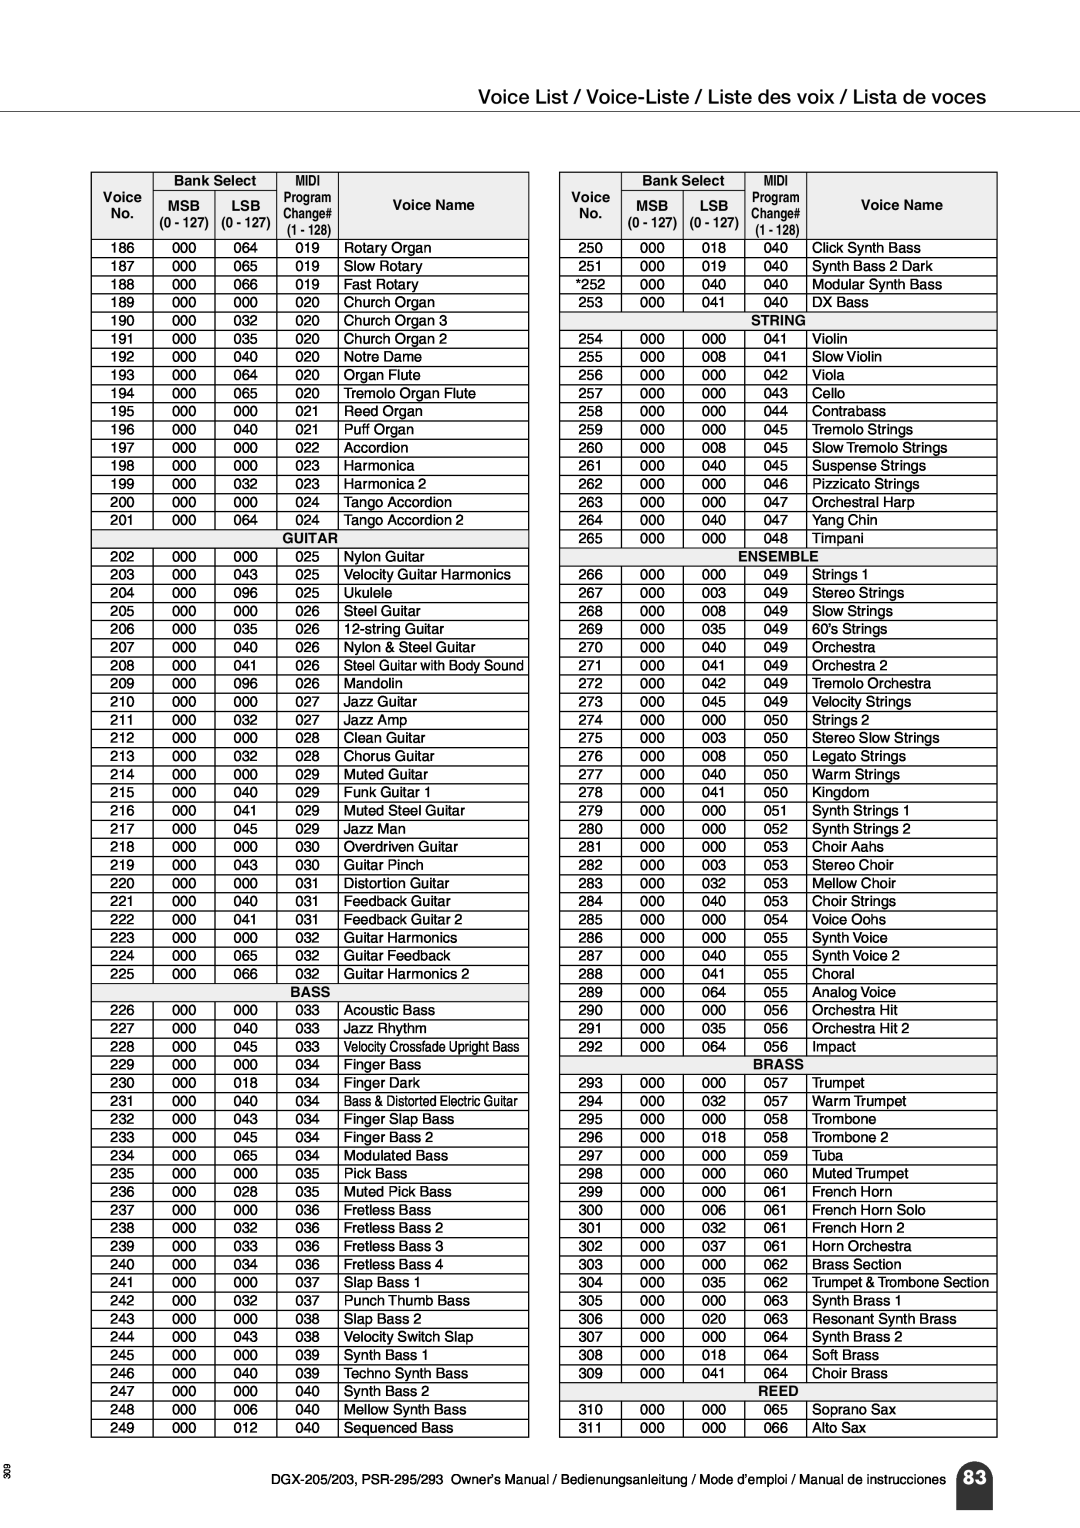 Yamaha PortableGrand DGX-203 Voice List / Voice-Liste / Liste des voix / Lista de voces, Velocity Crossfade Upright Bass 